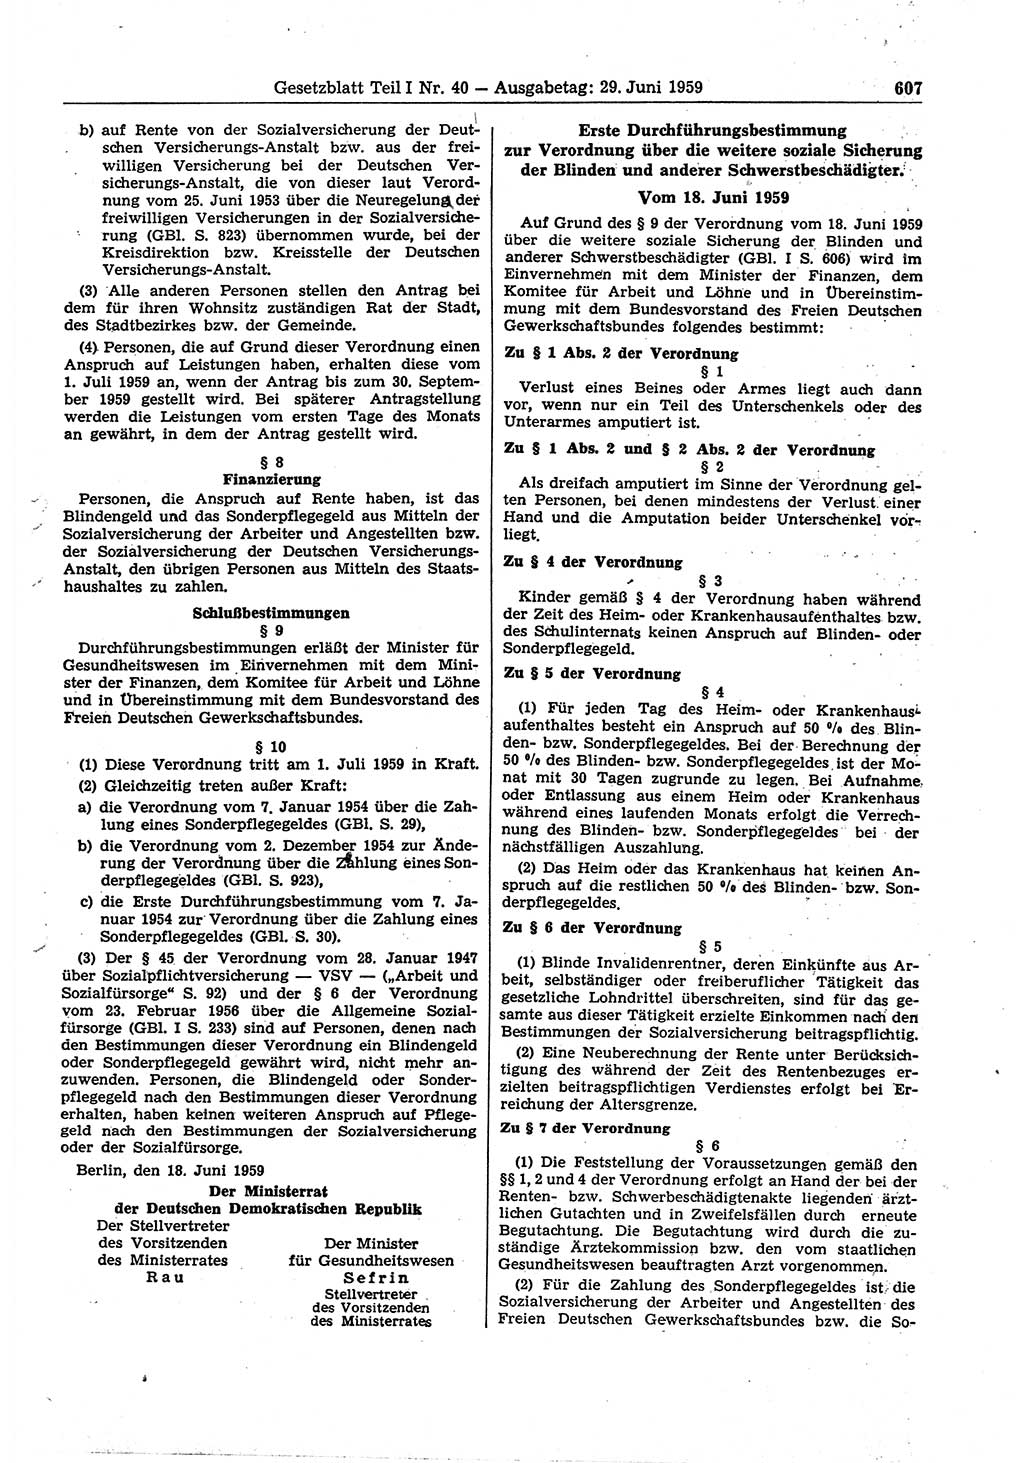 Gesetzblatt (GBl.) der Deutschen Demokratischen Republik (DDR) Teil Ⅰ 1959, Seite 607 (GBl. DDR Ⅰ 1959, S. 607)